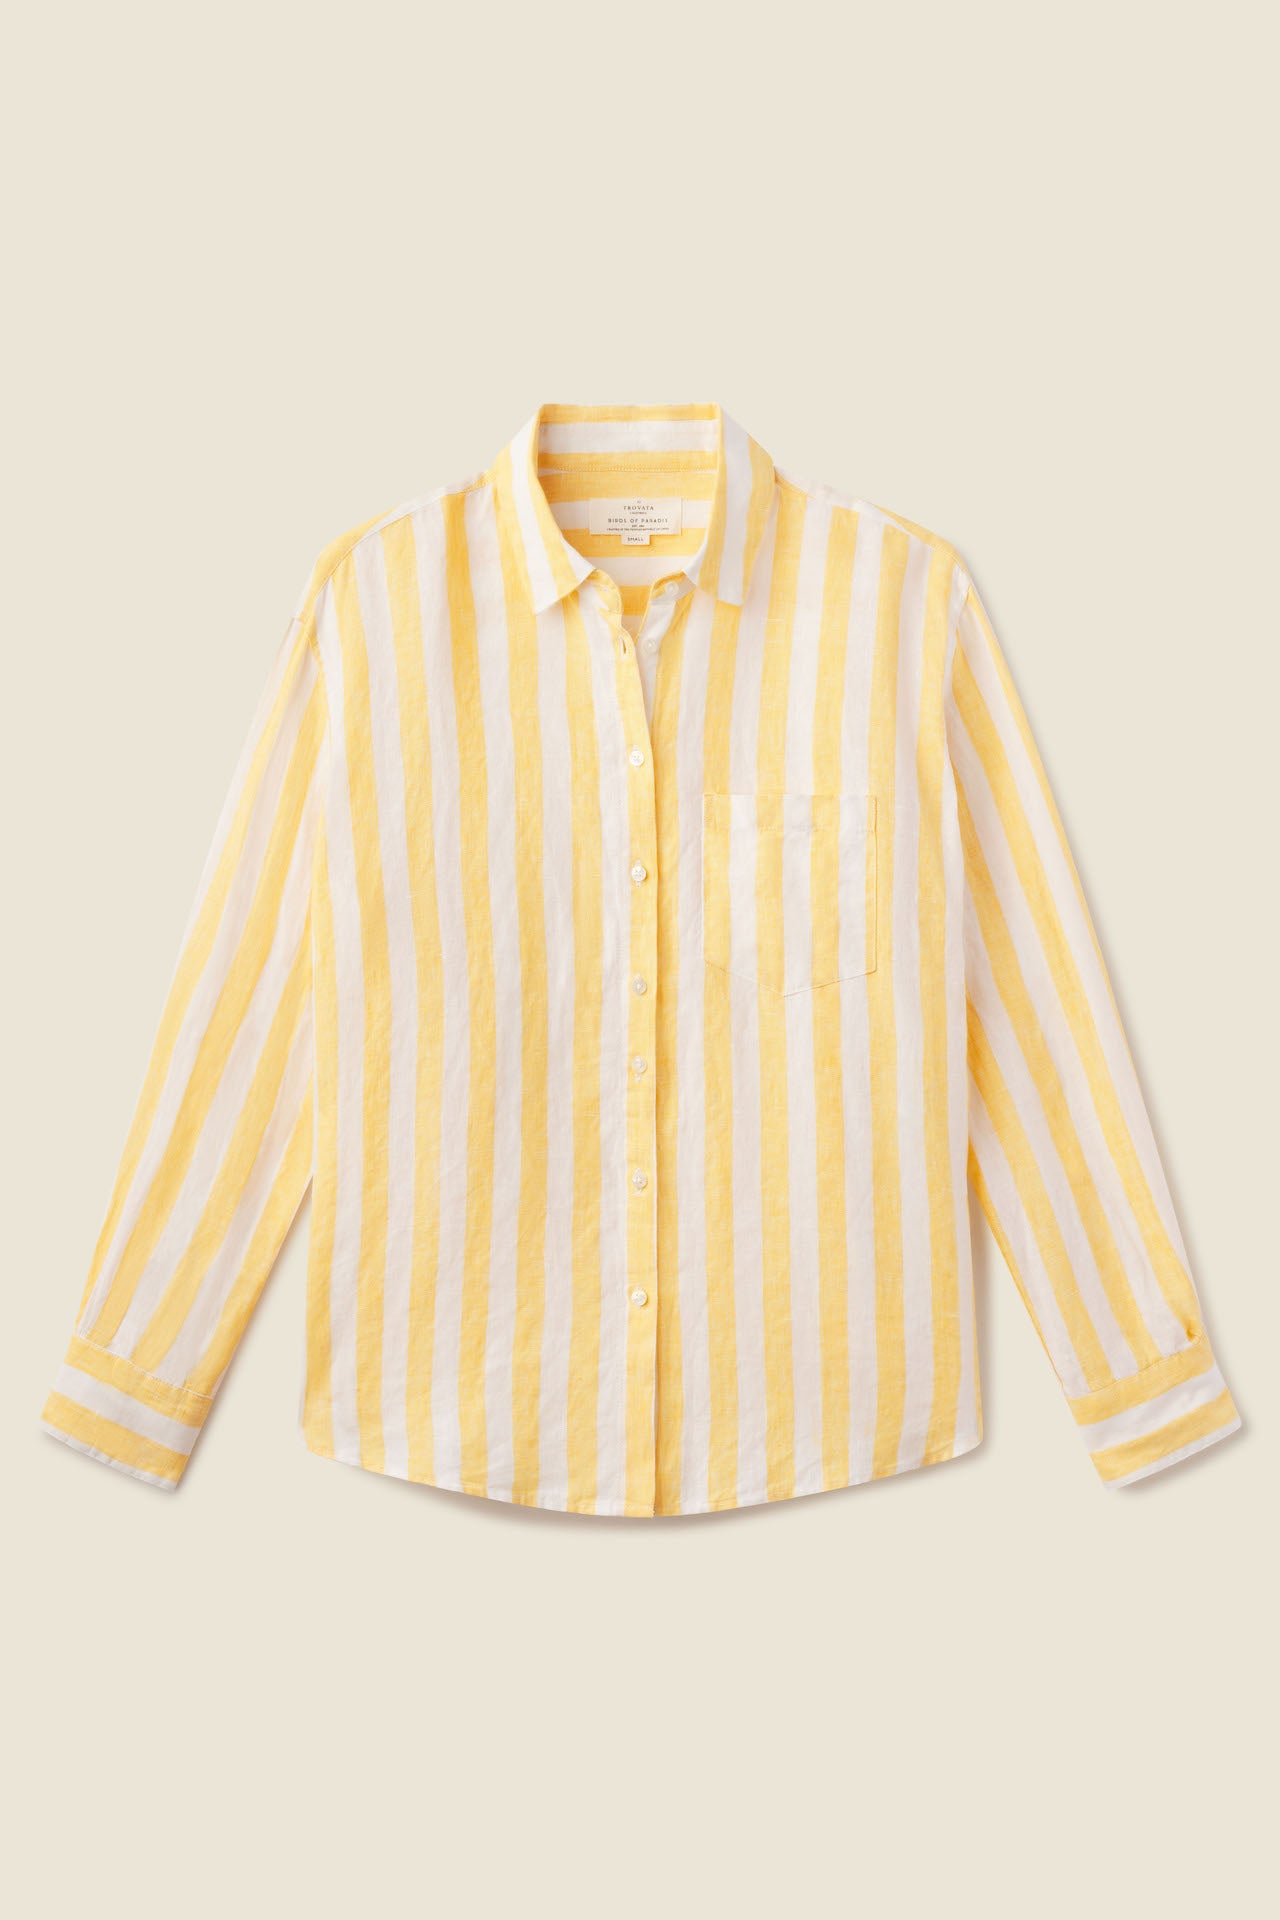 Blake Oversized Boyfriend Shirt Yellow Awning Stripe